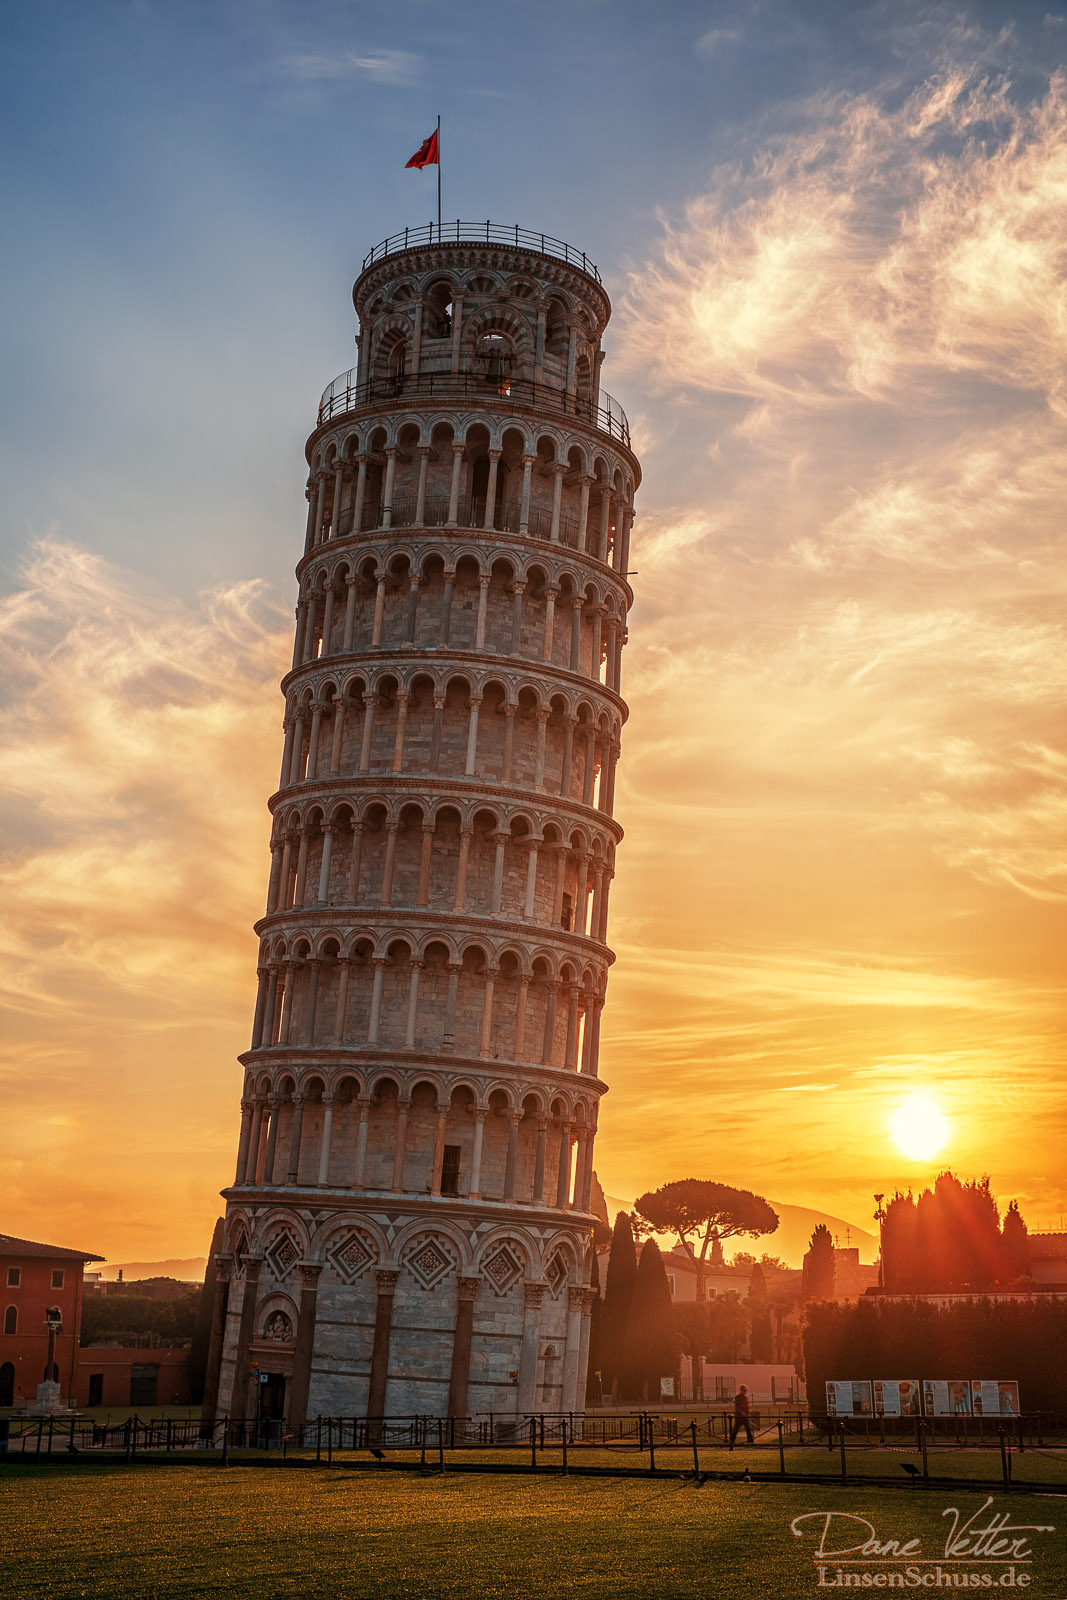 Башня. Пизанская башня Пиза. Падающая башня в Пизе, Италия. Достопримечательности Италии Пизанская башня. Колизей и Пизанская башня.